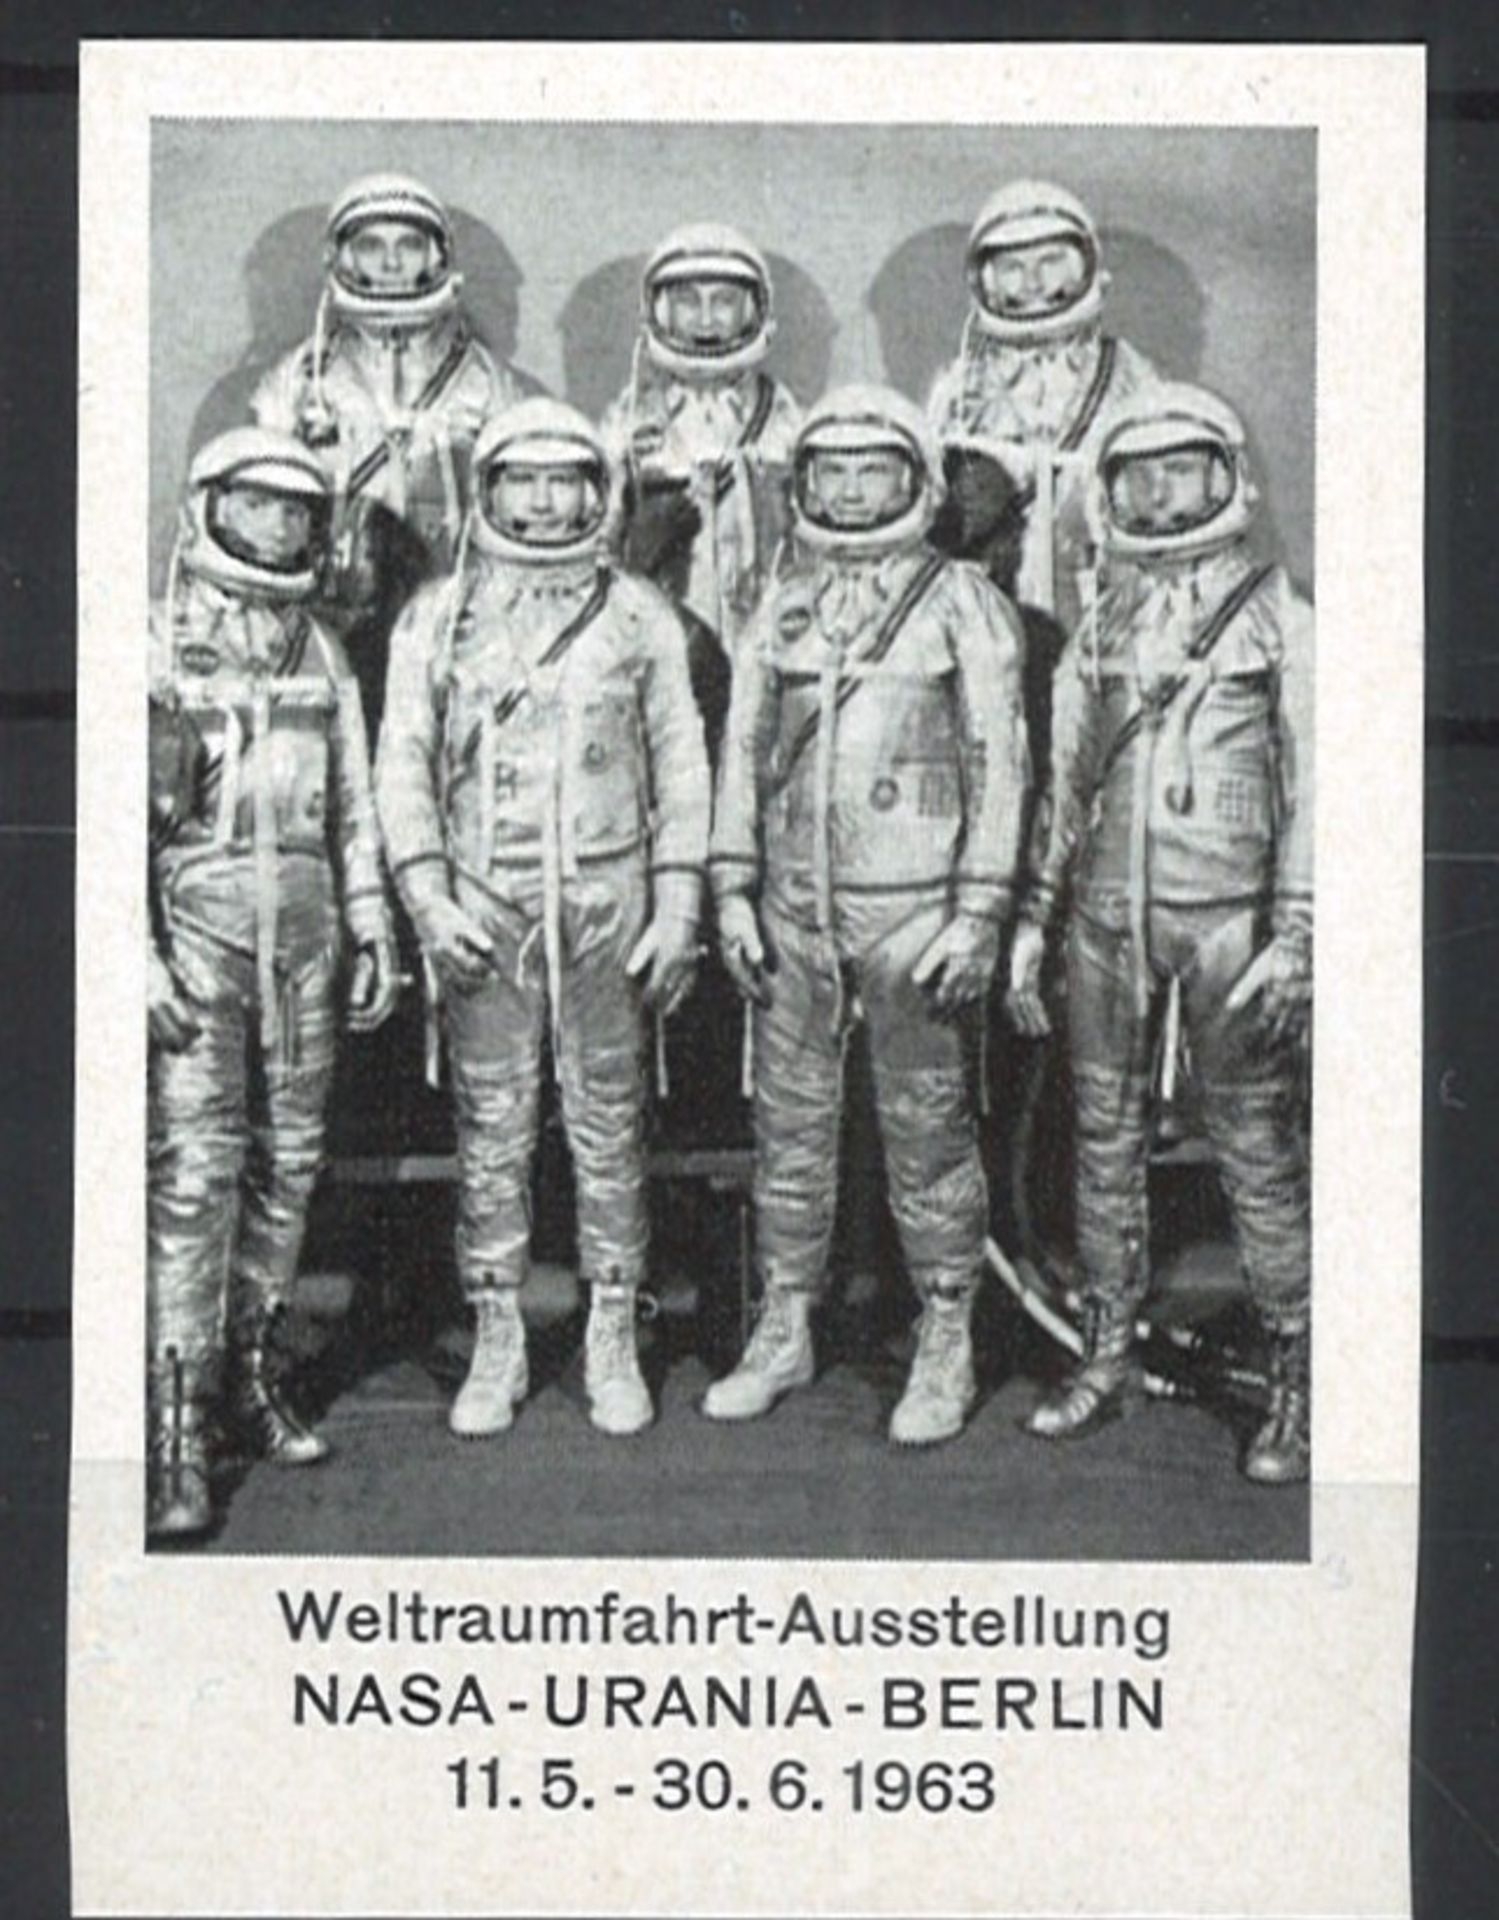 Berlin Weltraum Besonderheiten. Ausstellungs Vignette zur Nasa-Urania-Berlin 1963, nur auf der